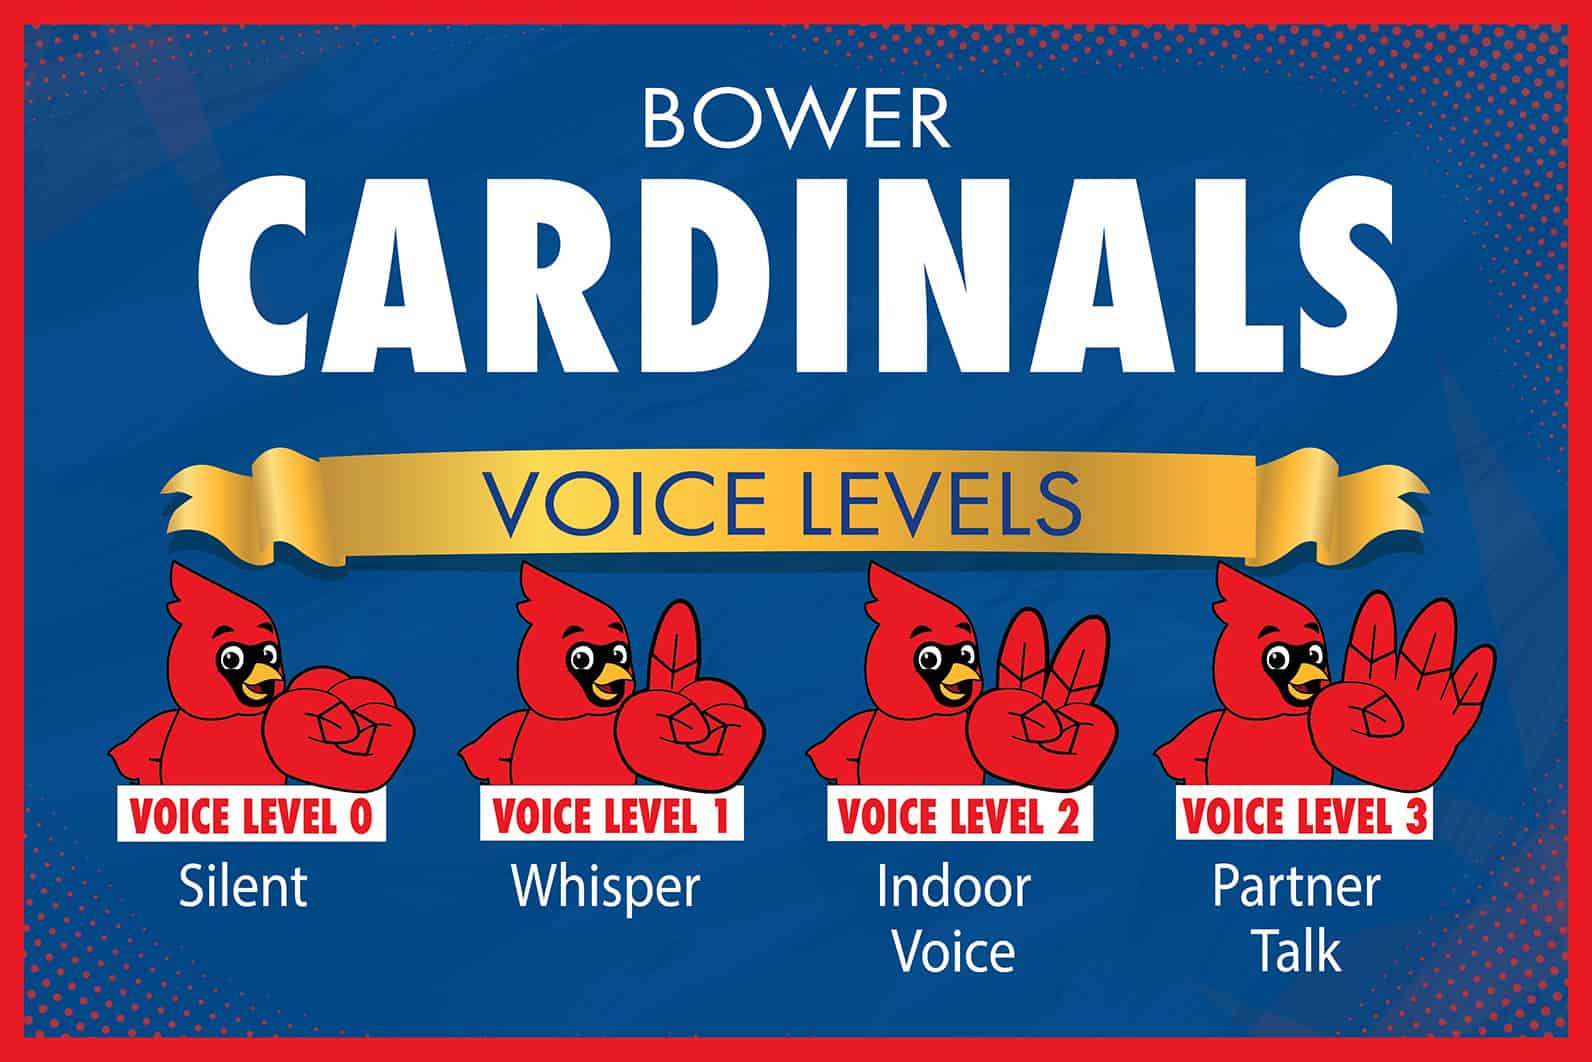 Voice-levels-cardinal2